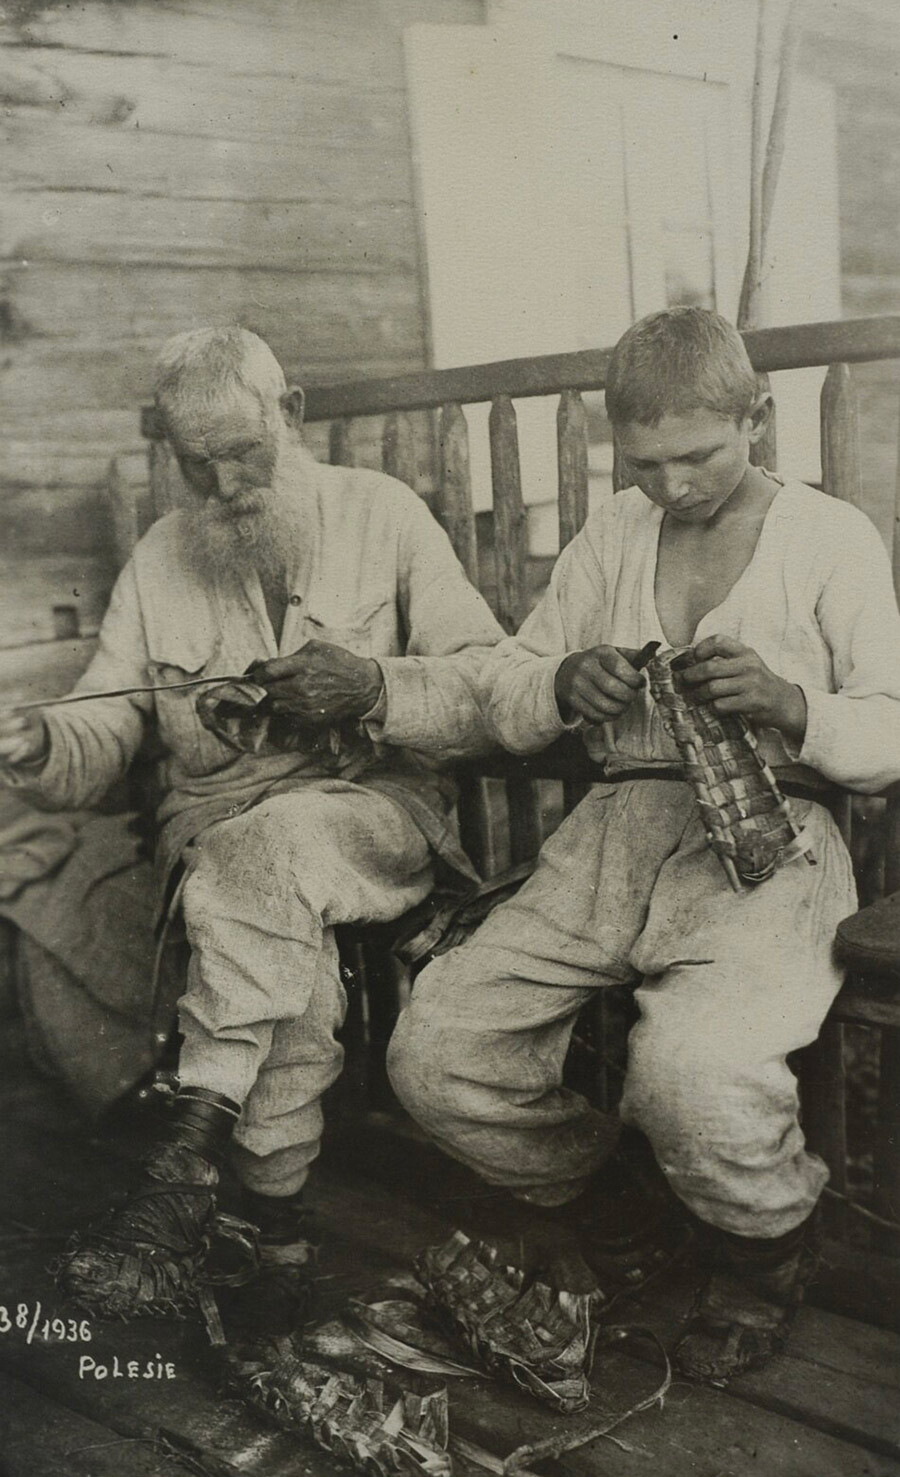 Un anciano y un niño de Polesie tejiendo fideos, 1936